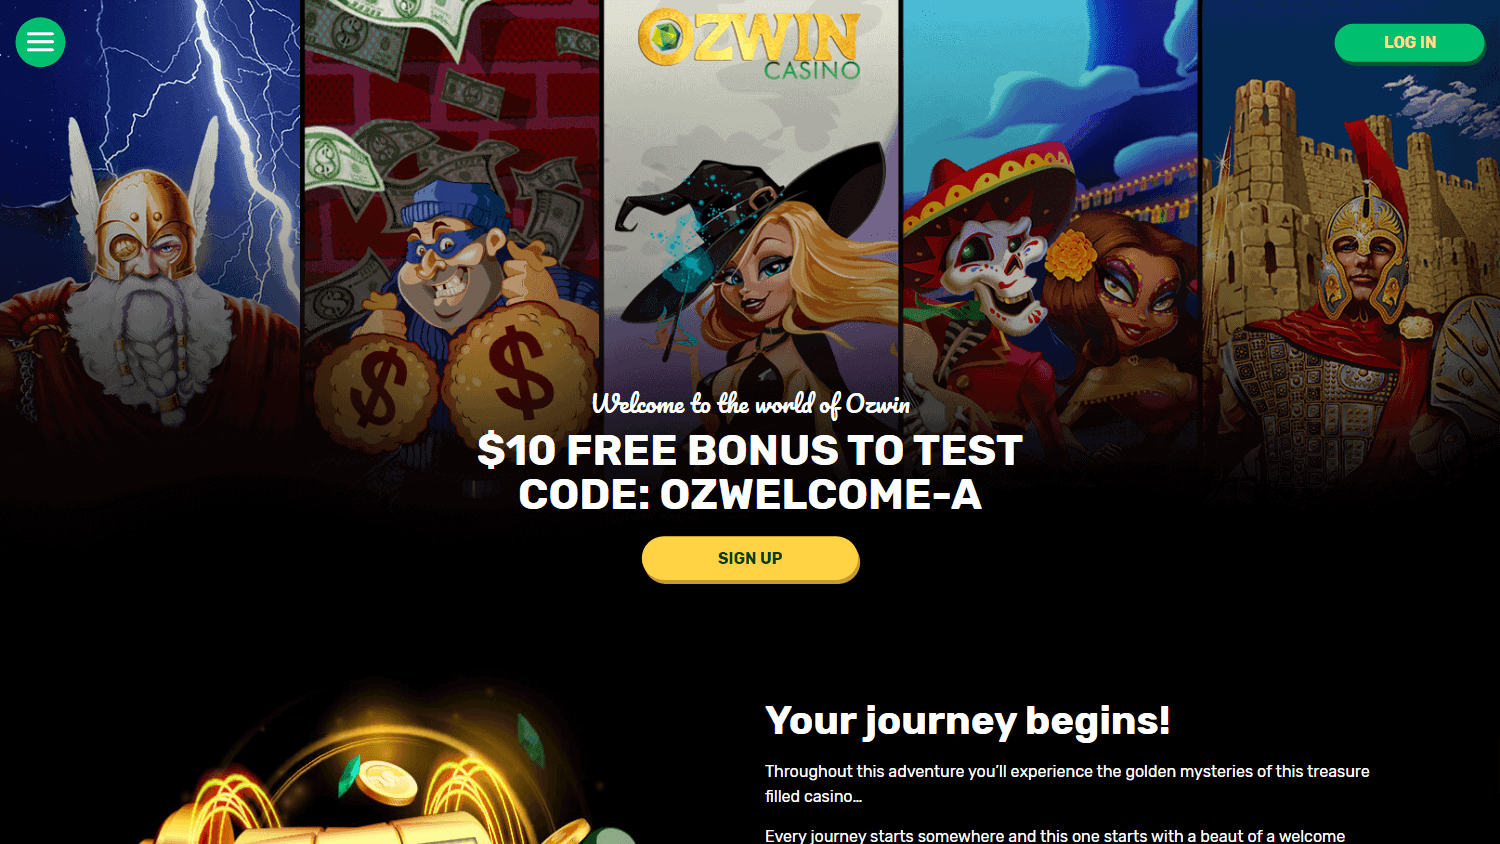 ozwin_casino_homepage_desktop